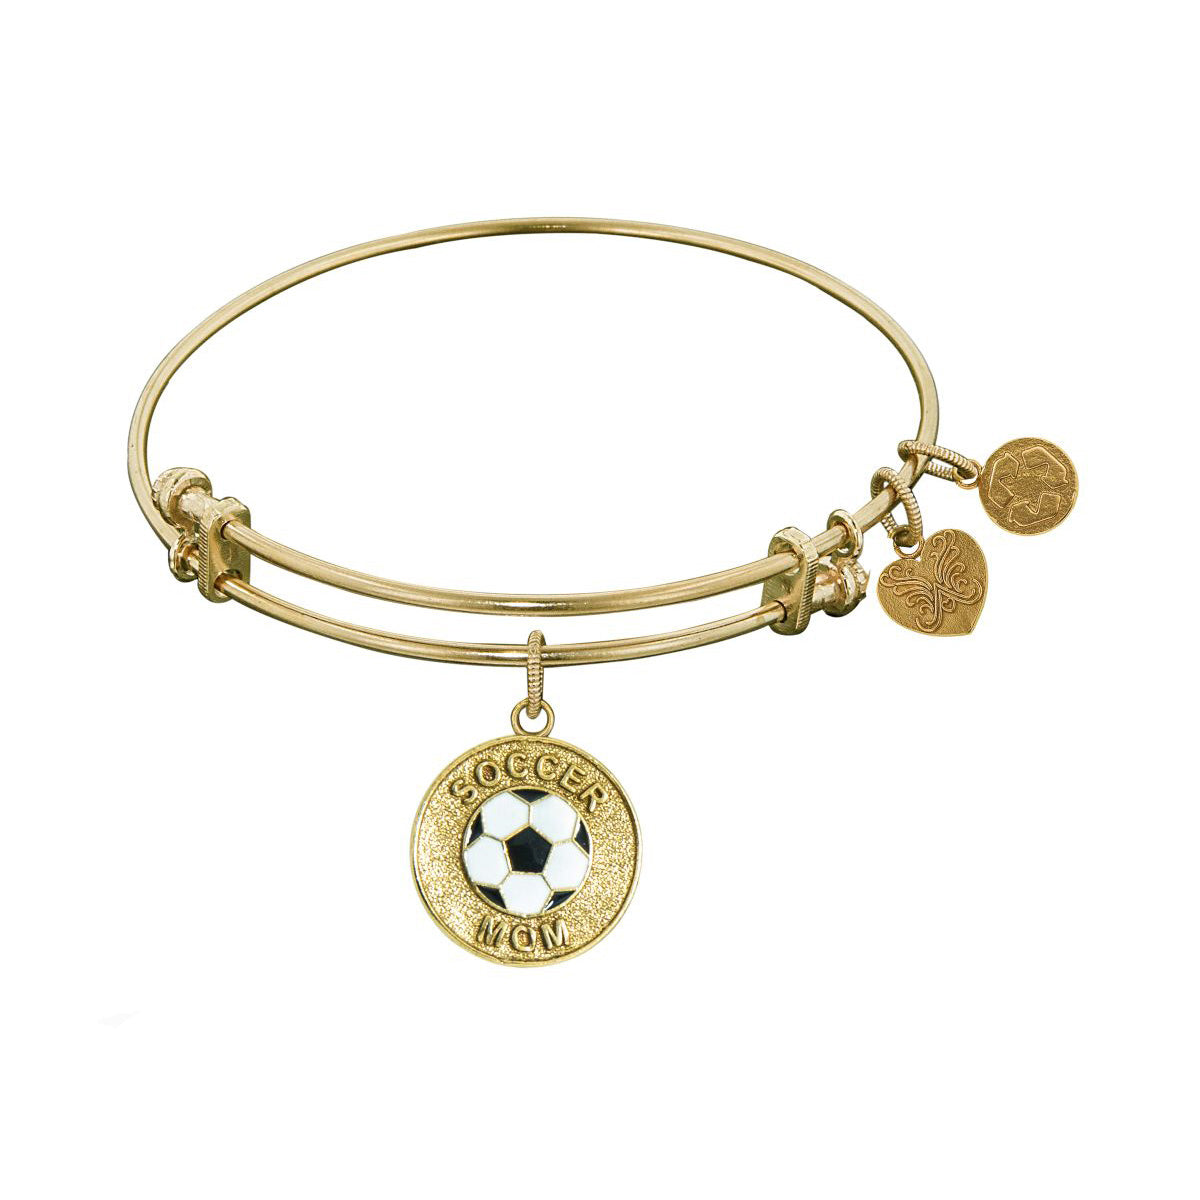 Stipple Finish Brass Soccer Mom Angelica Bangle Bracelet, 7.25" fine designer jewelry for men and women